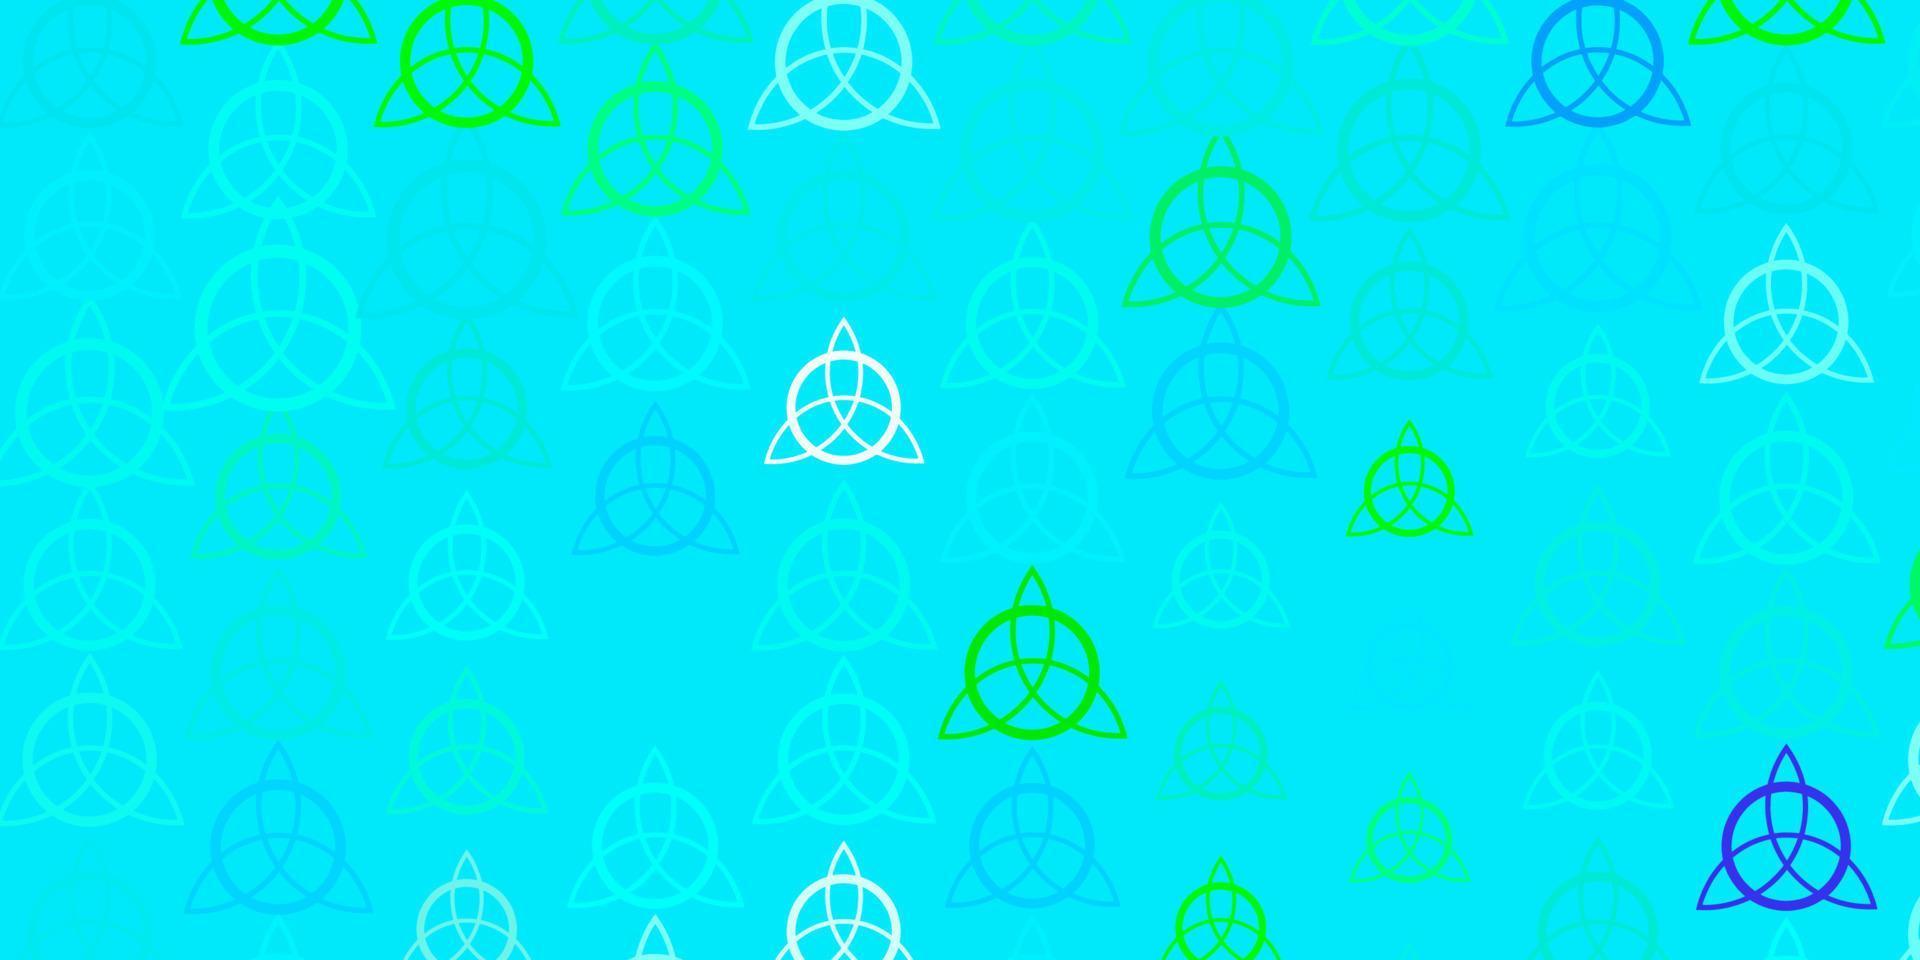 toile de fond de vecteur bleu clair, vert avec des symboles mystérieux.